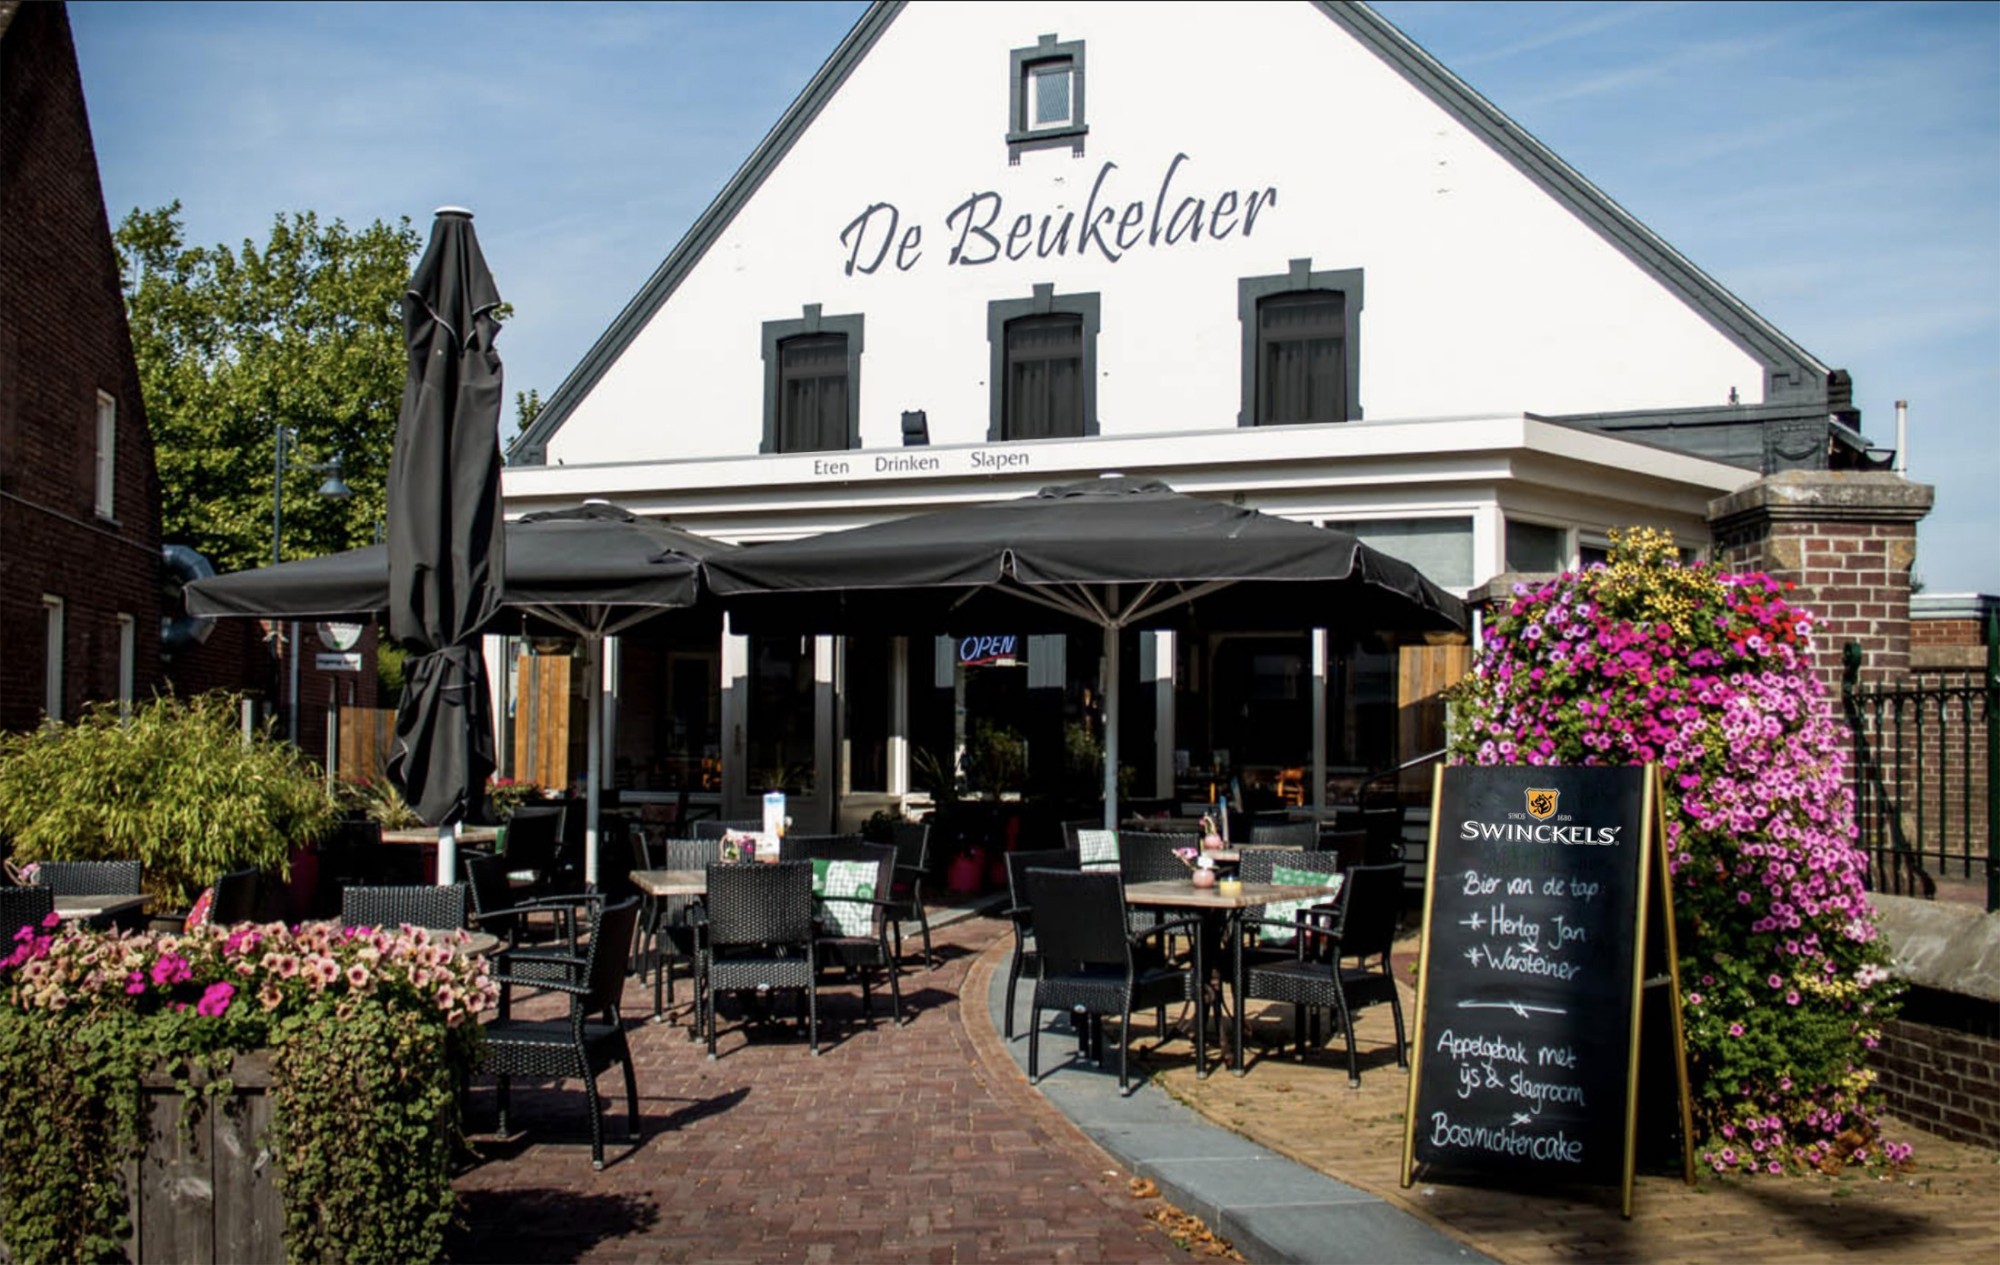 “Restaurant de Beukelaer, al ruim 50 jaar een begrip in Leudal en omgeving.”